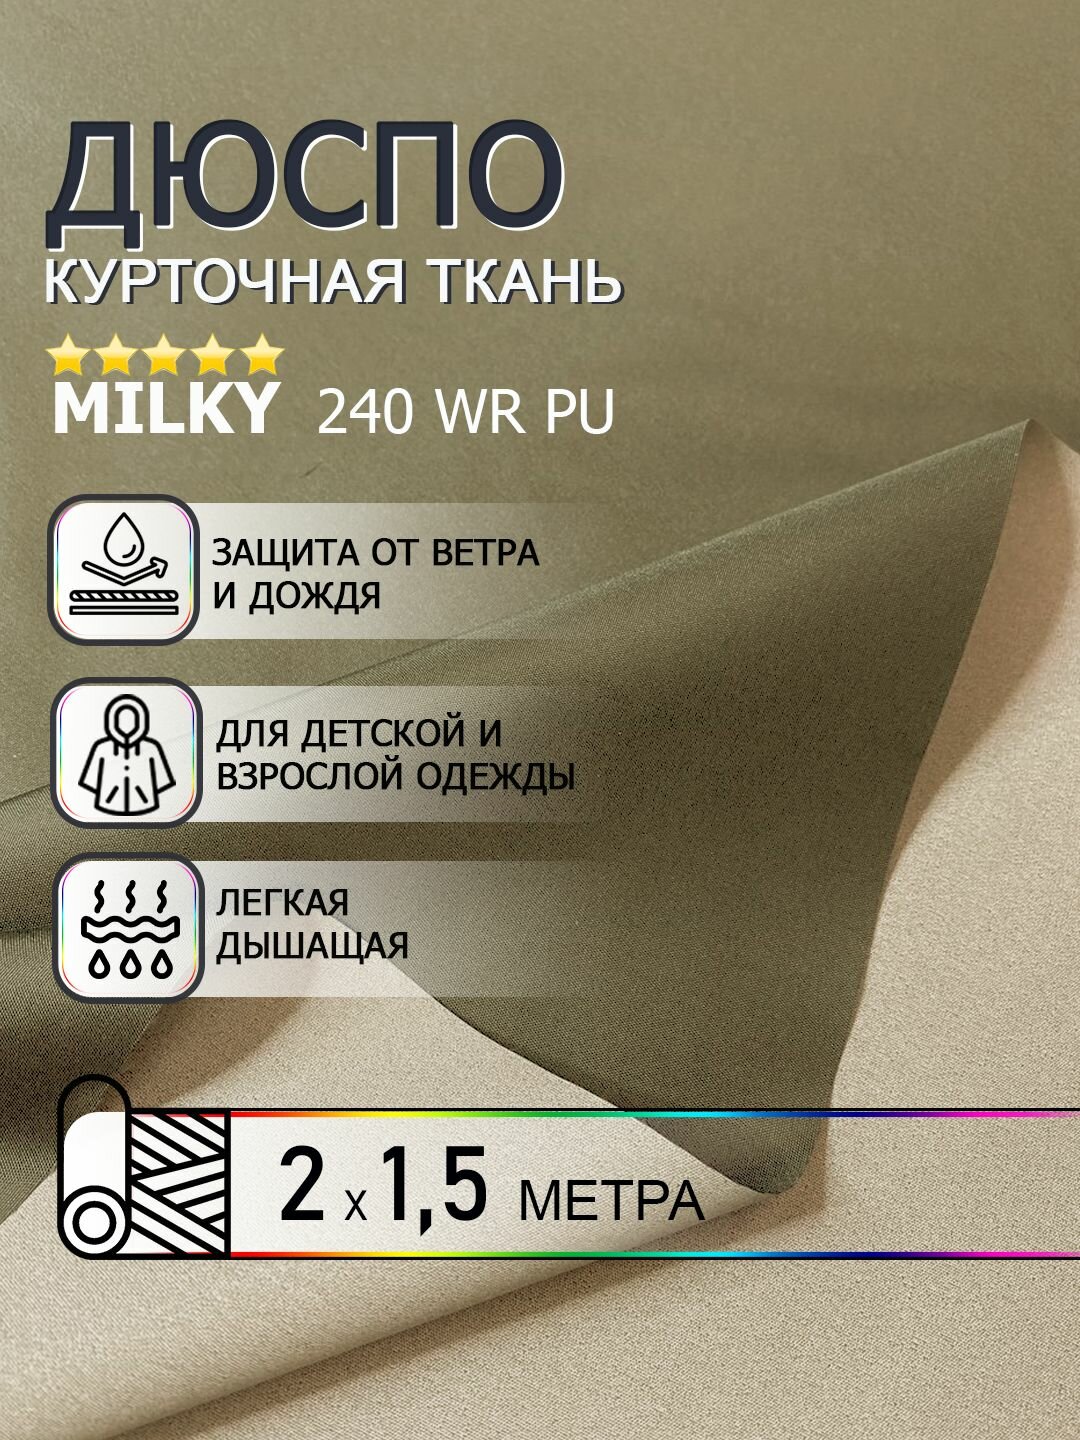 Ткань курточная Дюспо Milky, цвет светлый хаки 2м х150см. ткань для шитья водоотталкивающая пропитка 240Т WR PU